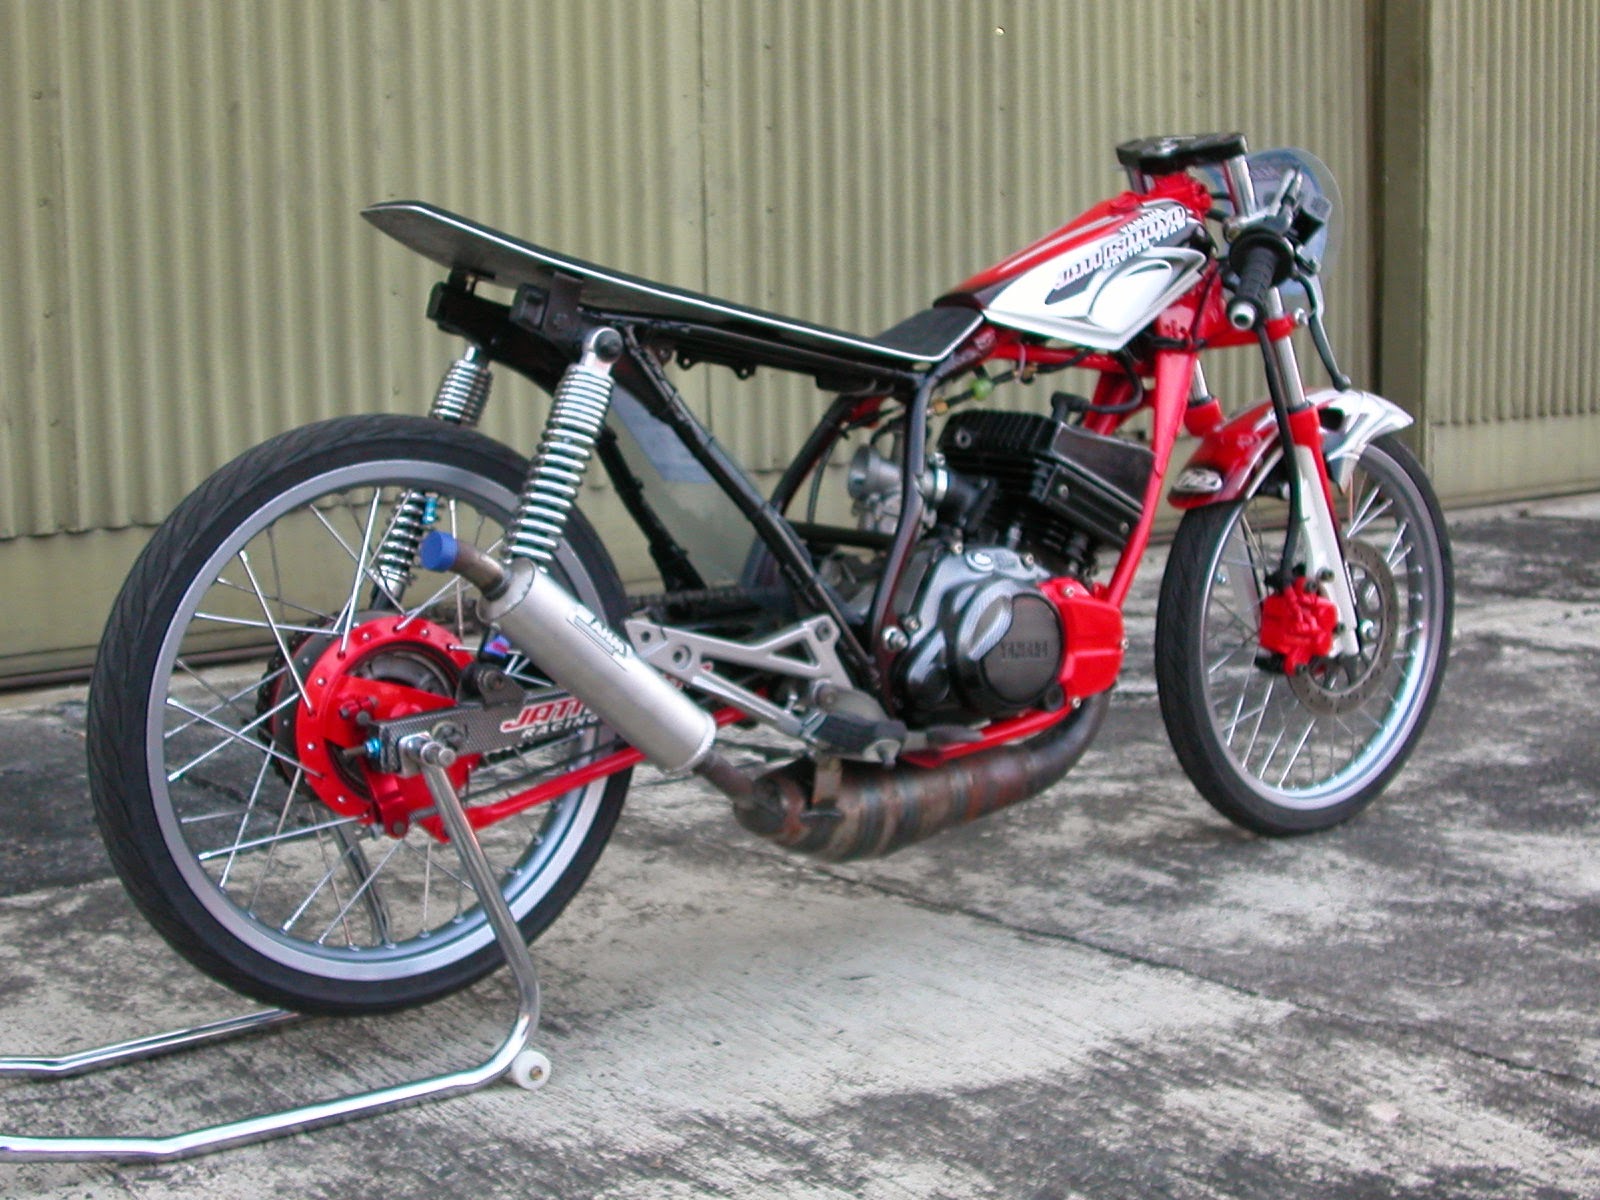 Modifikasi Klx 150 Jadi Supermoto - Thecitycyclist